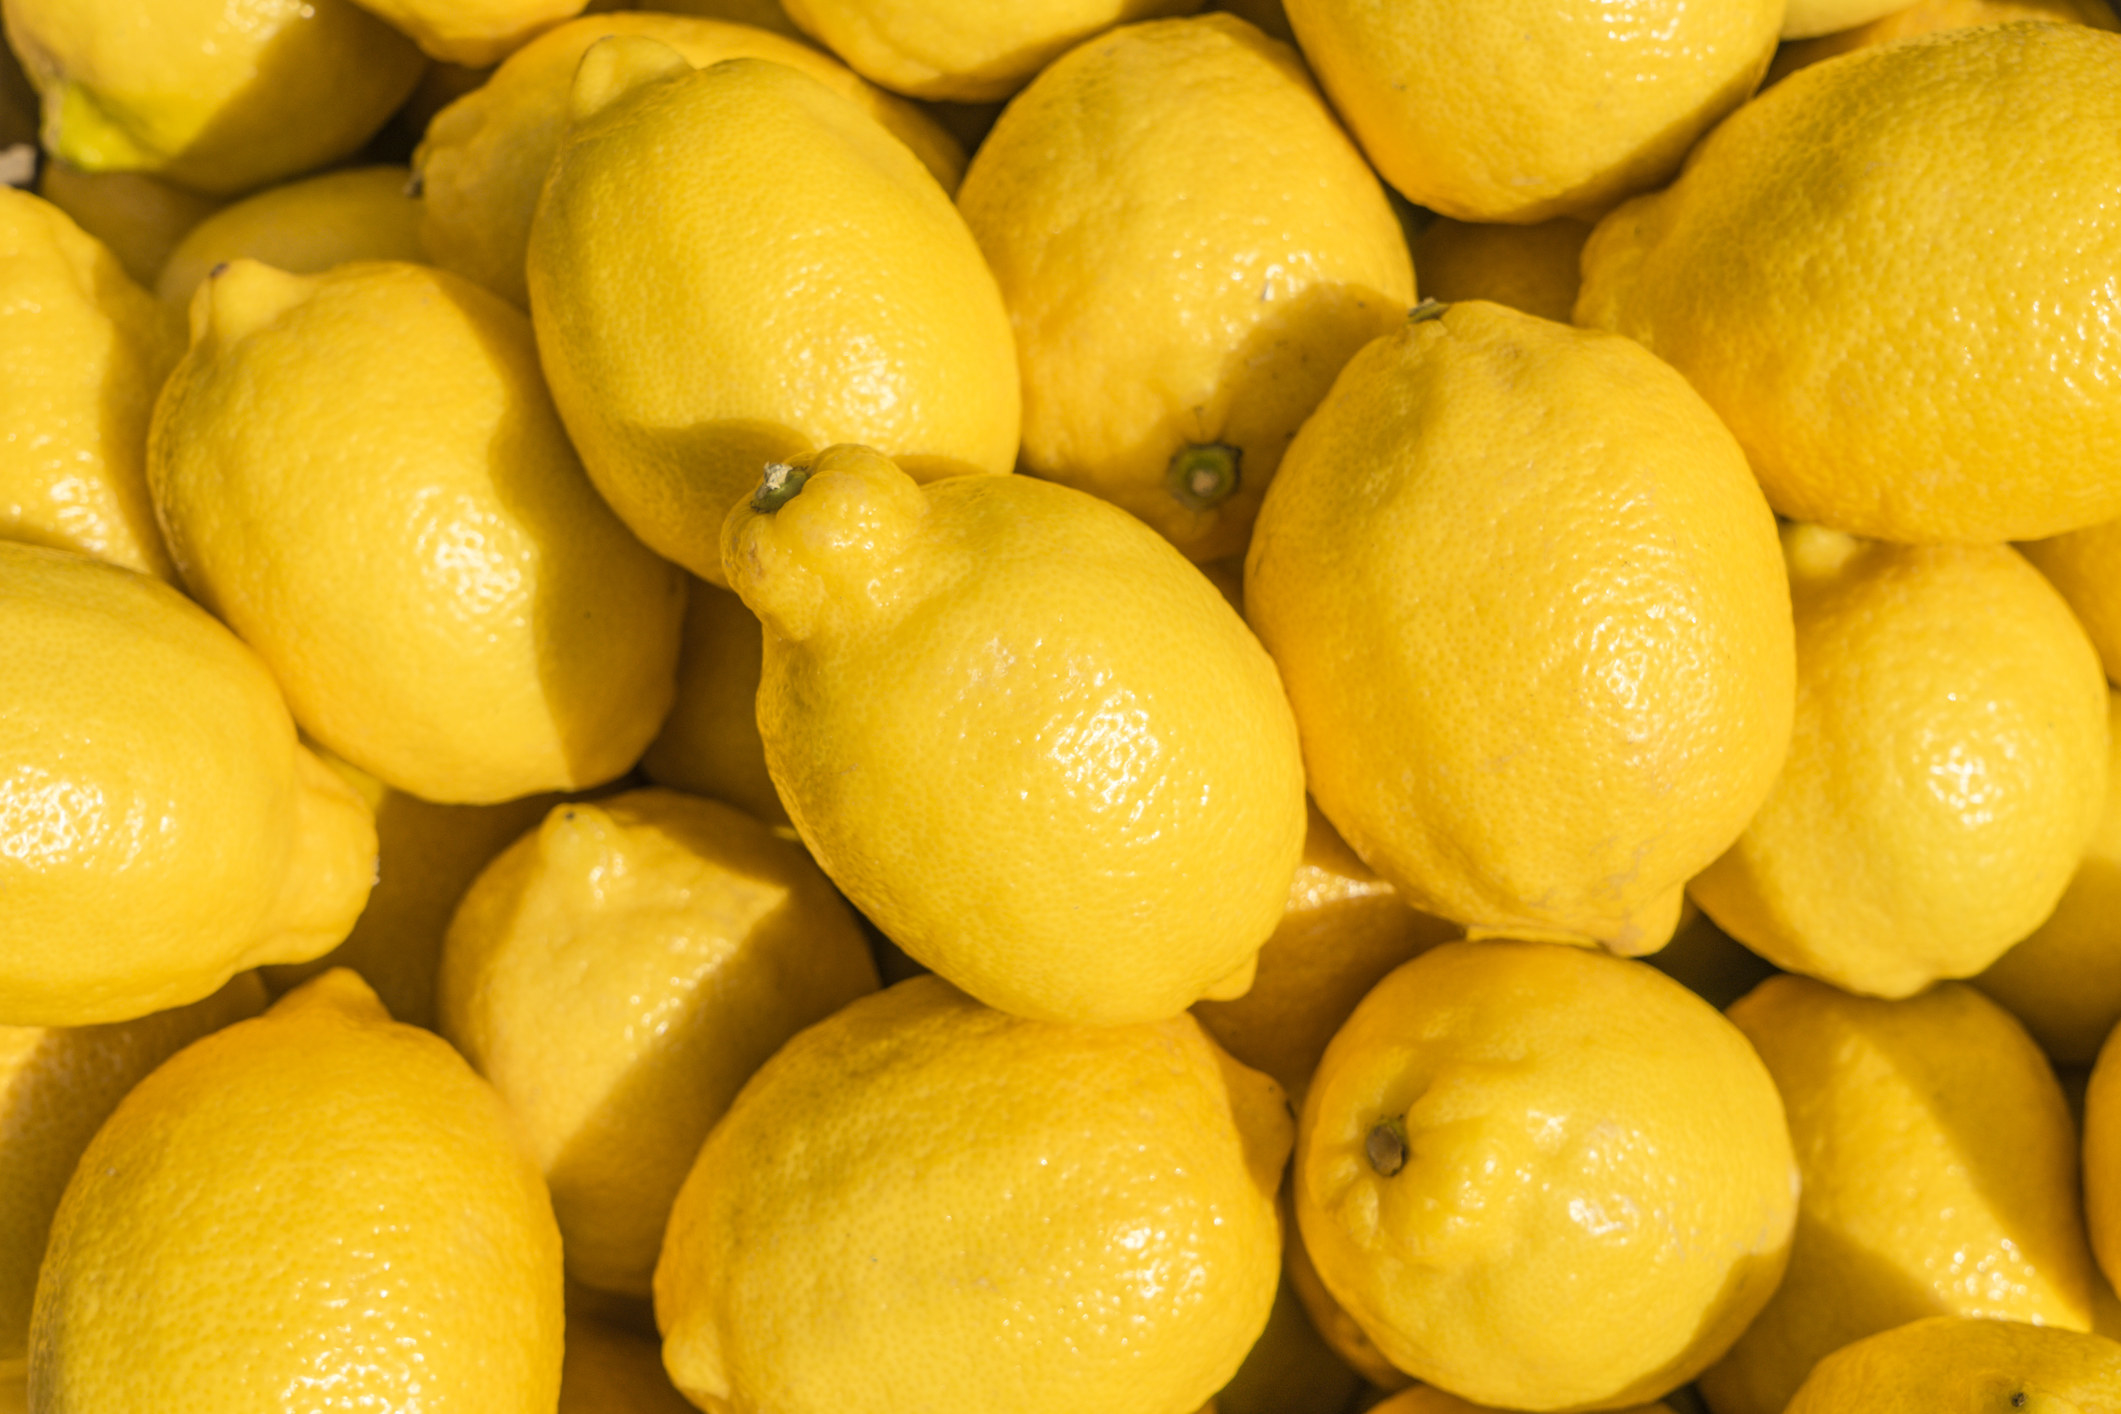 Pile of lemons